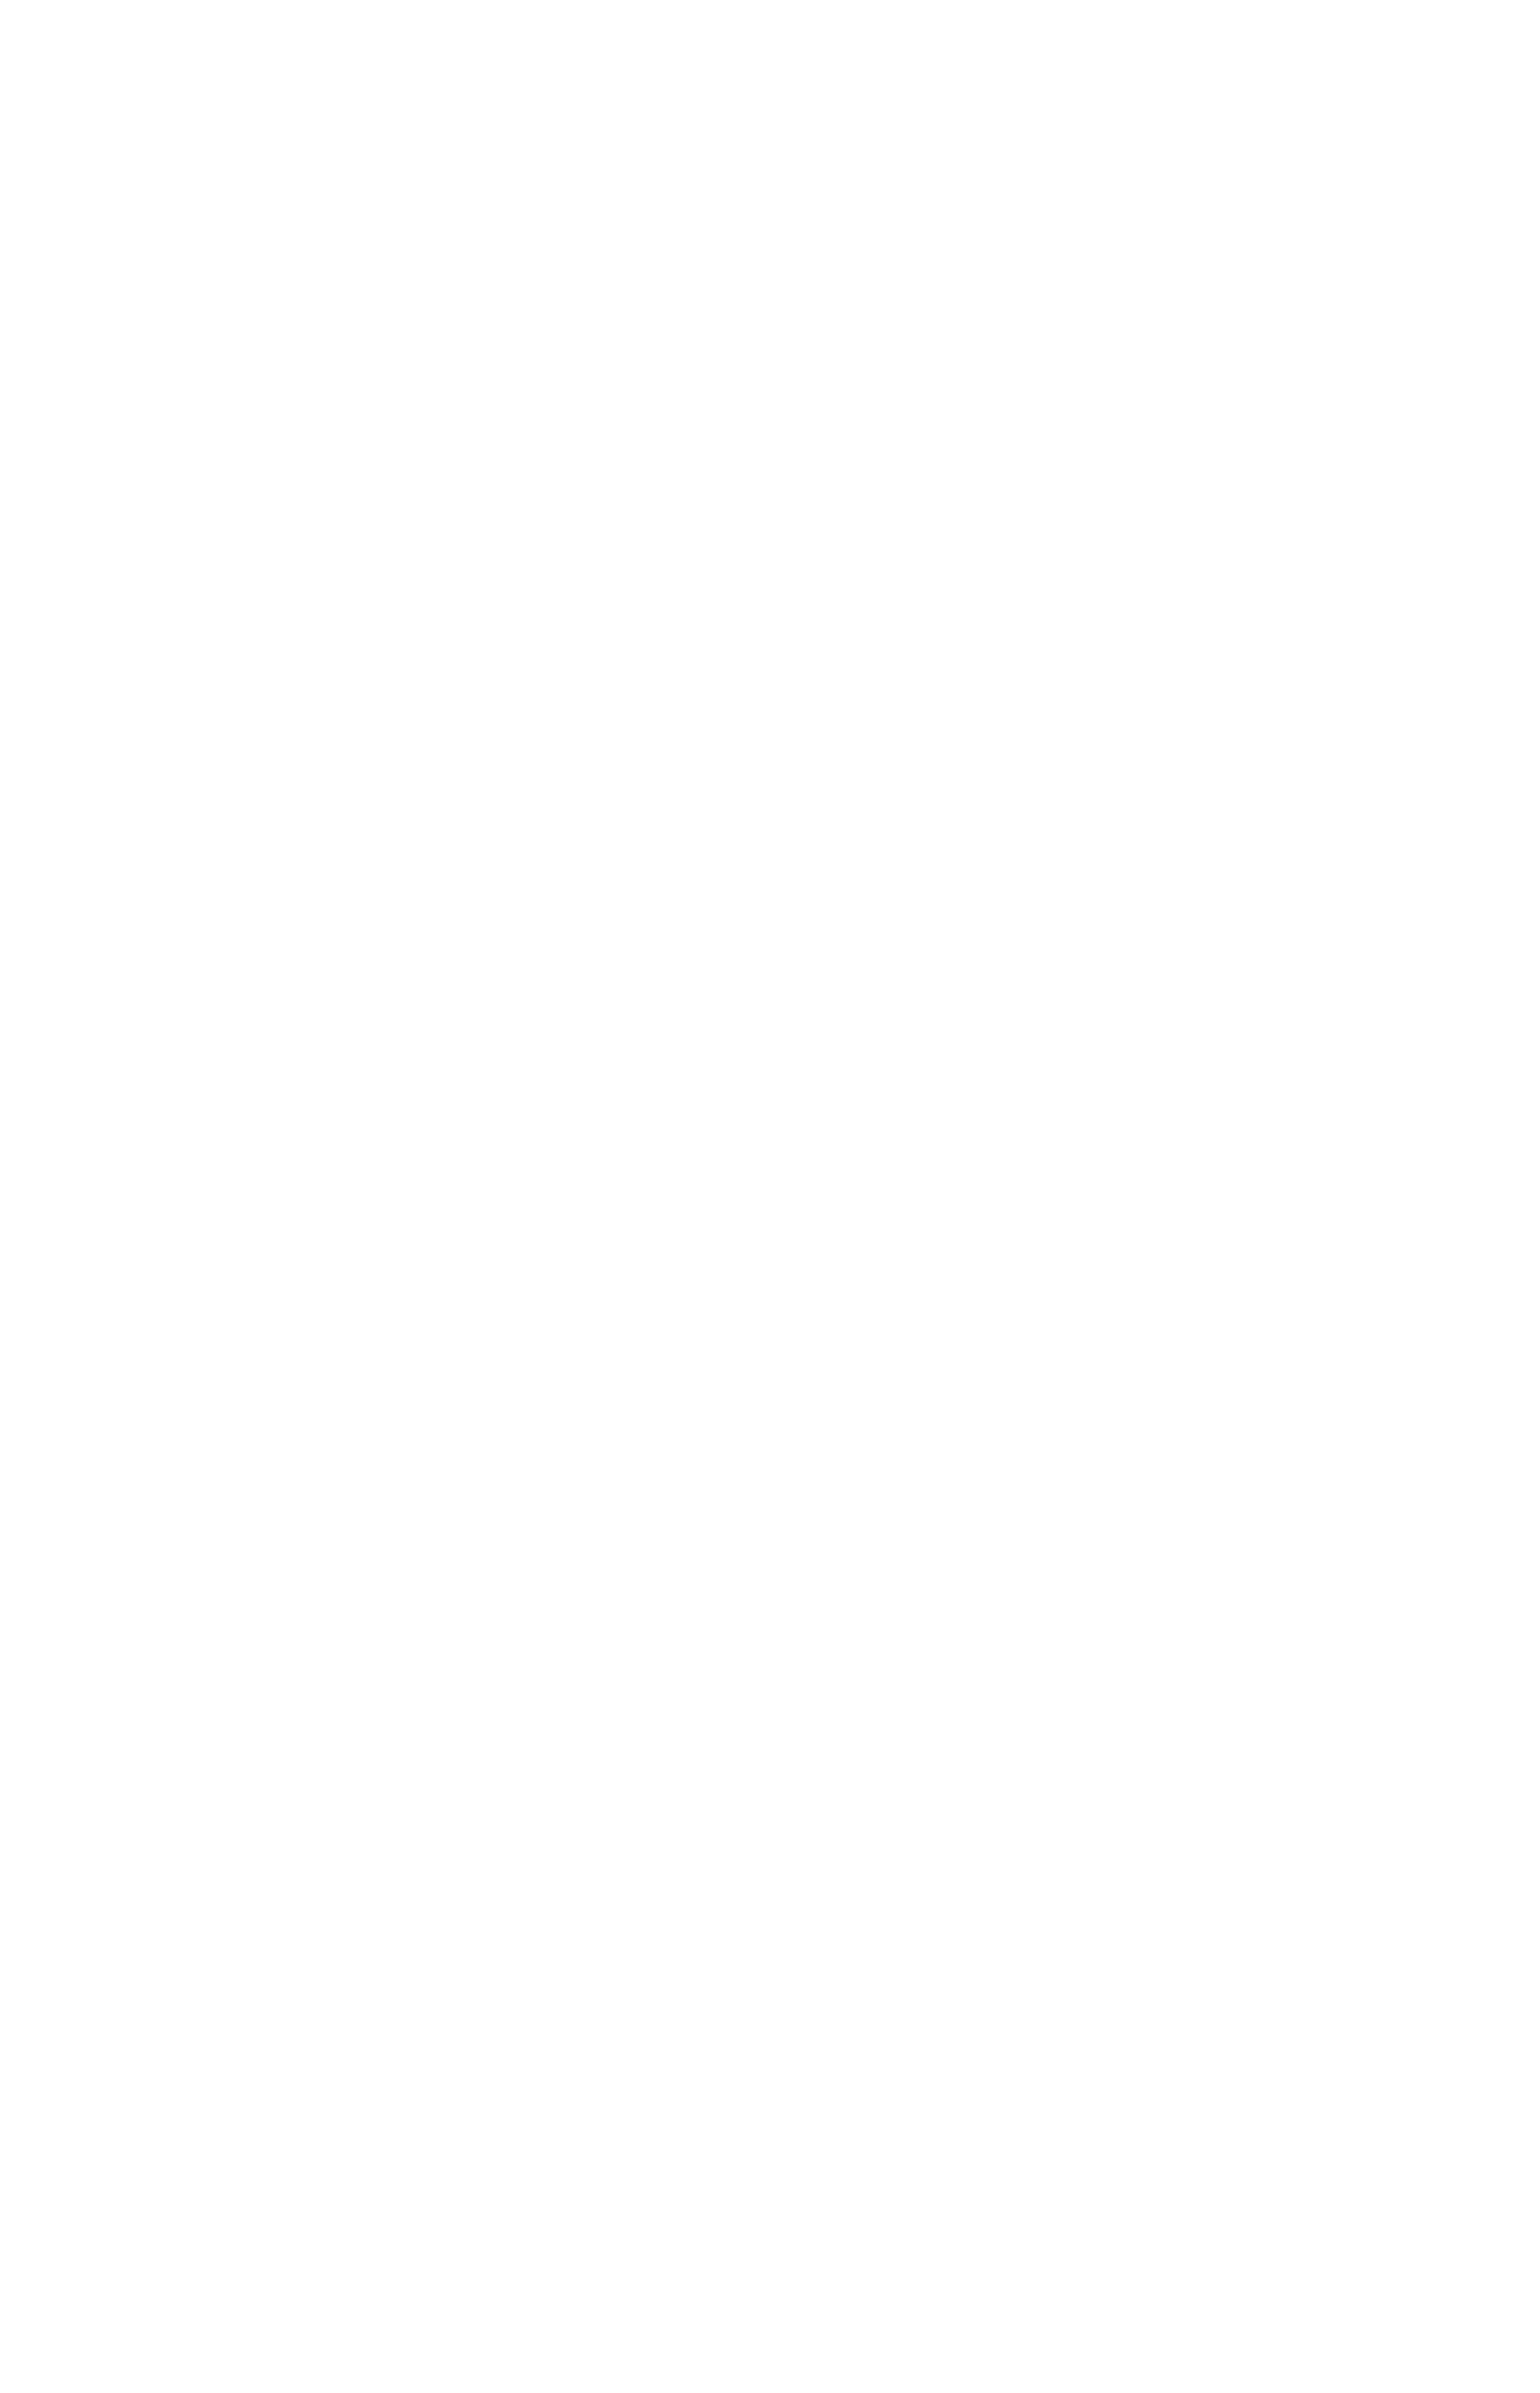 Oleb Media Logo White on Transparent background